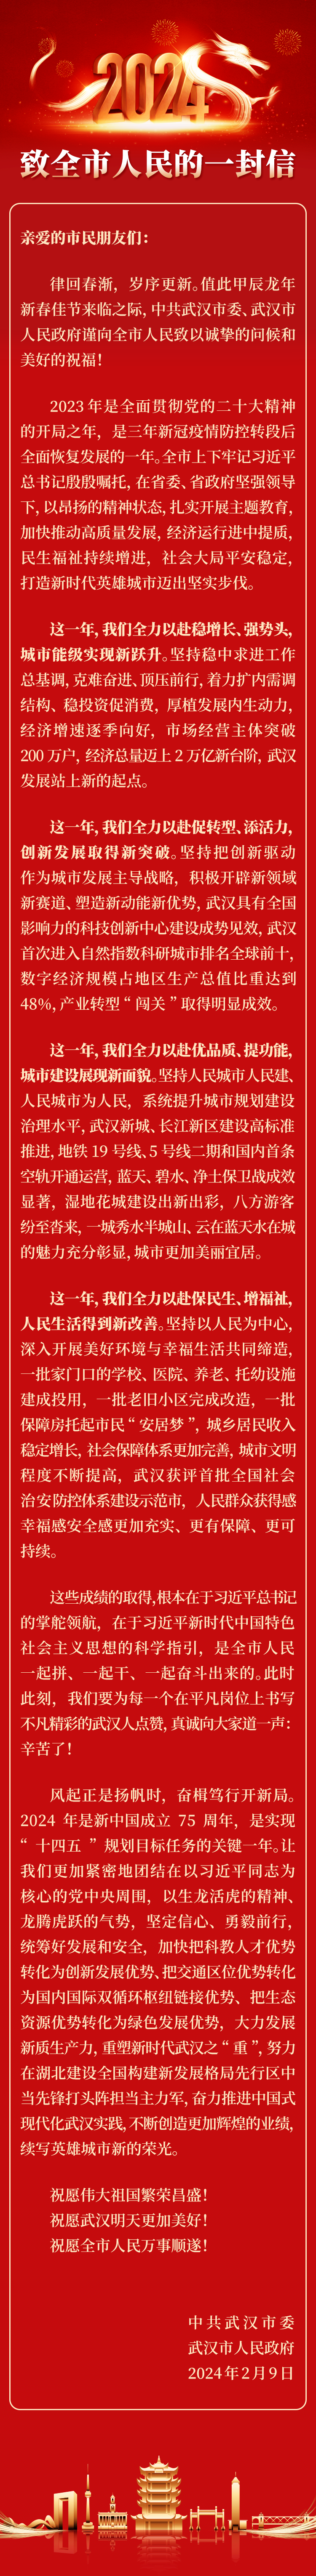 武汉市委市政府致全市人民的一封信